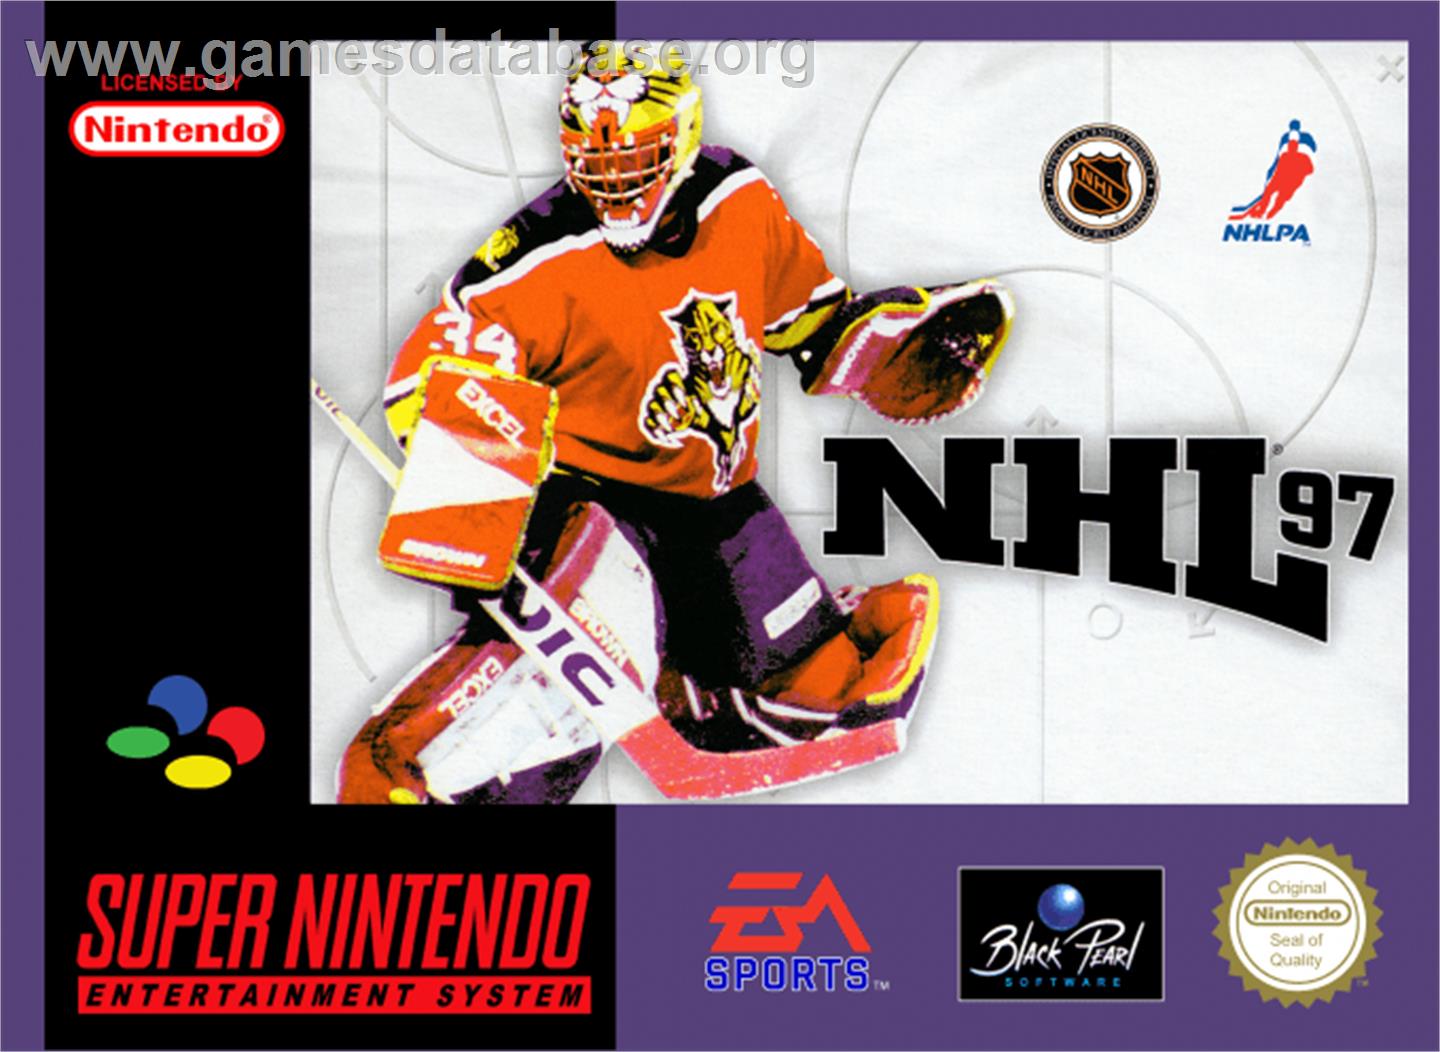 NHL '97 - Nintendo SNES - Artwork - Box